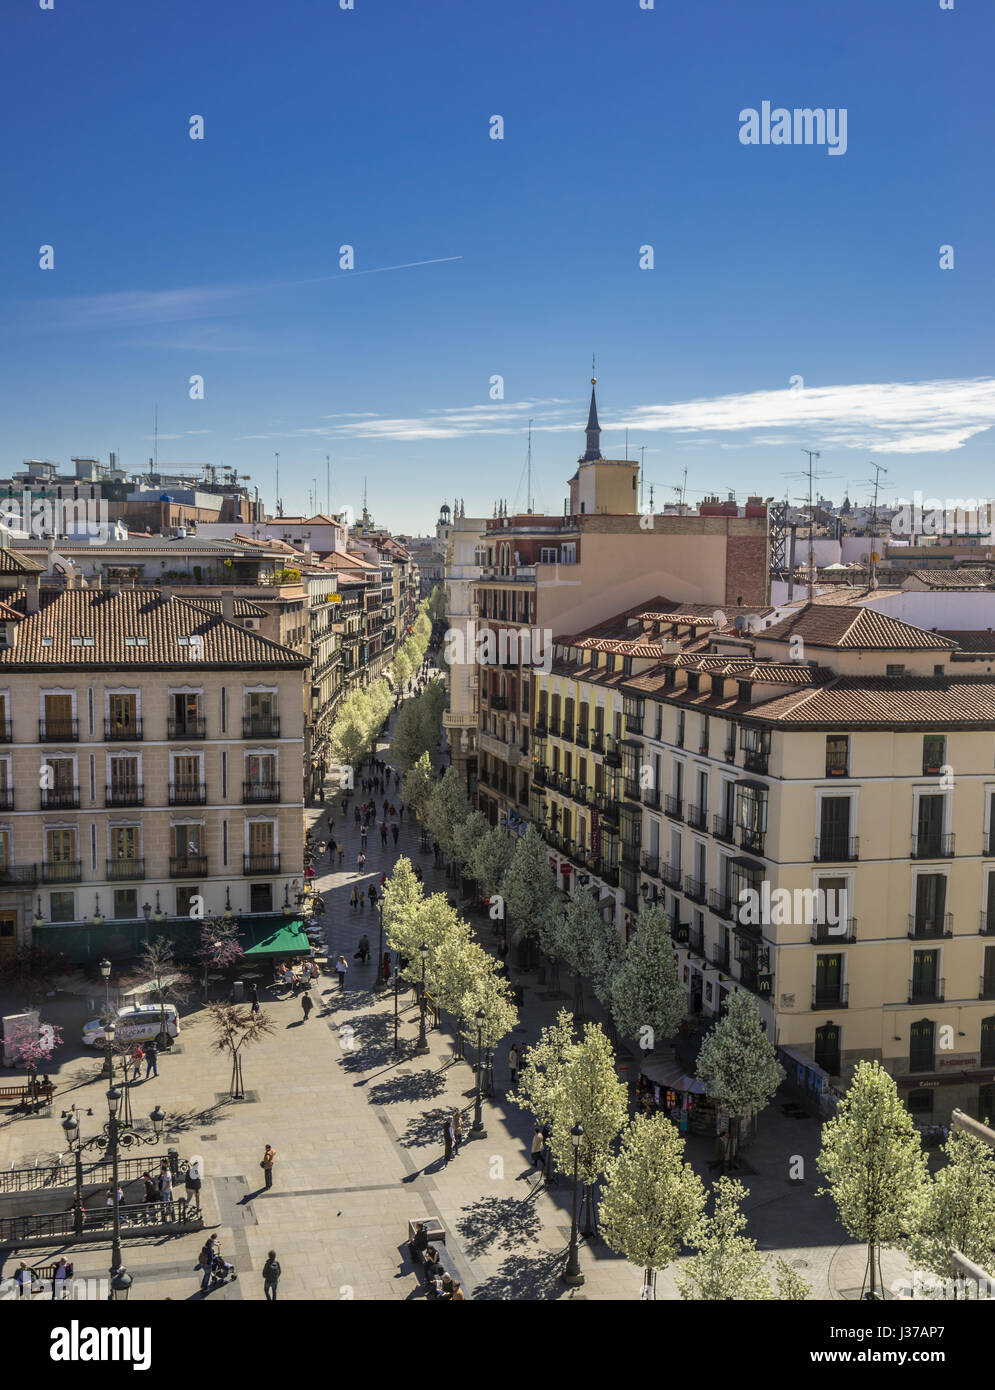 Ciliegi fioriti da Plaza de Isabel II lungo Calle Arenal (Calle del Arenal) alla piazza Puerta del Sol e la torre dell orologio, Madrid Spagna Foto Stock